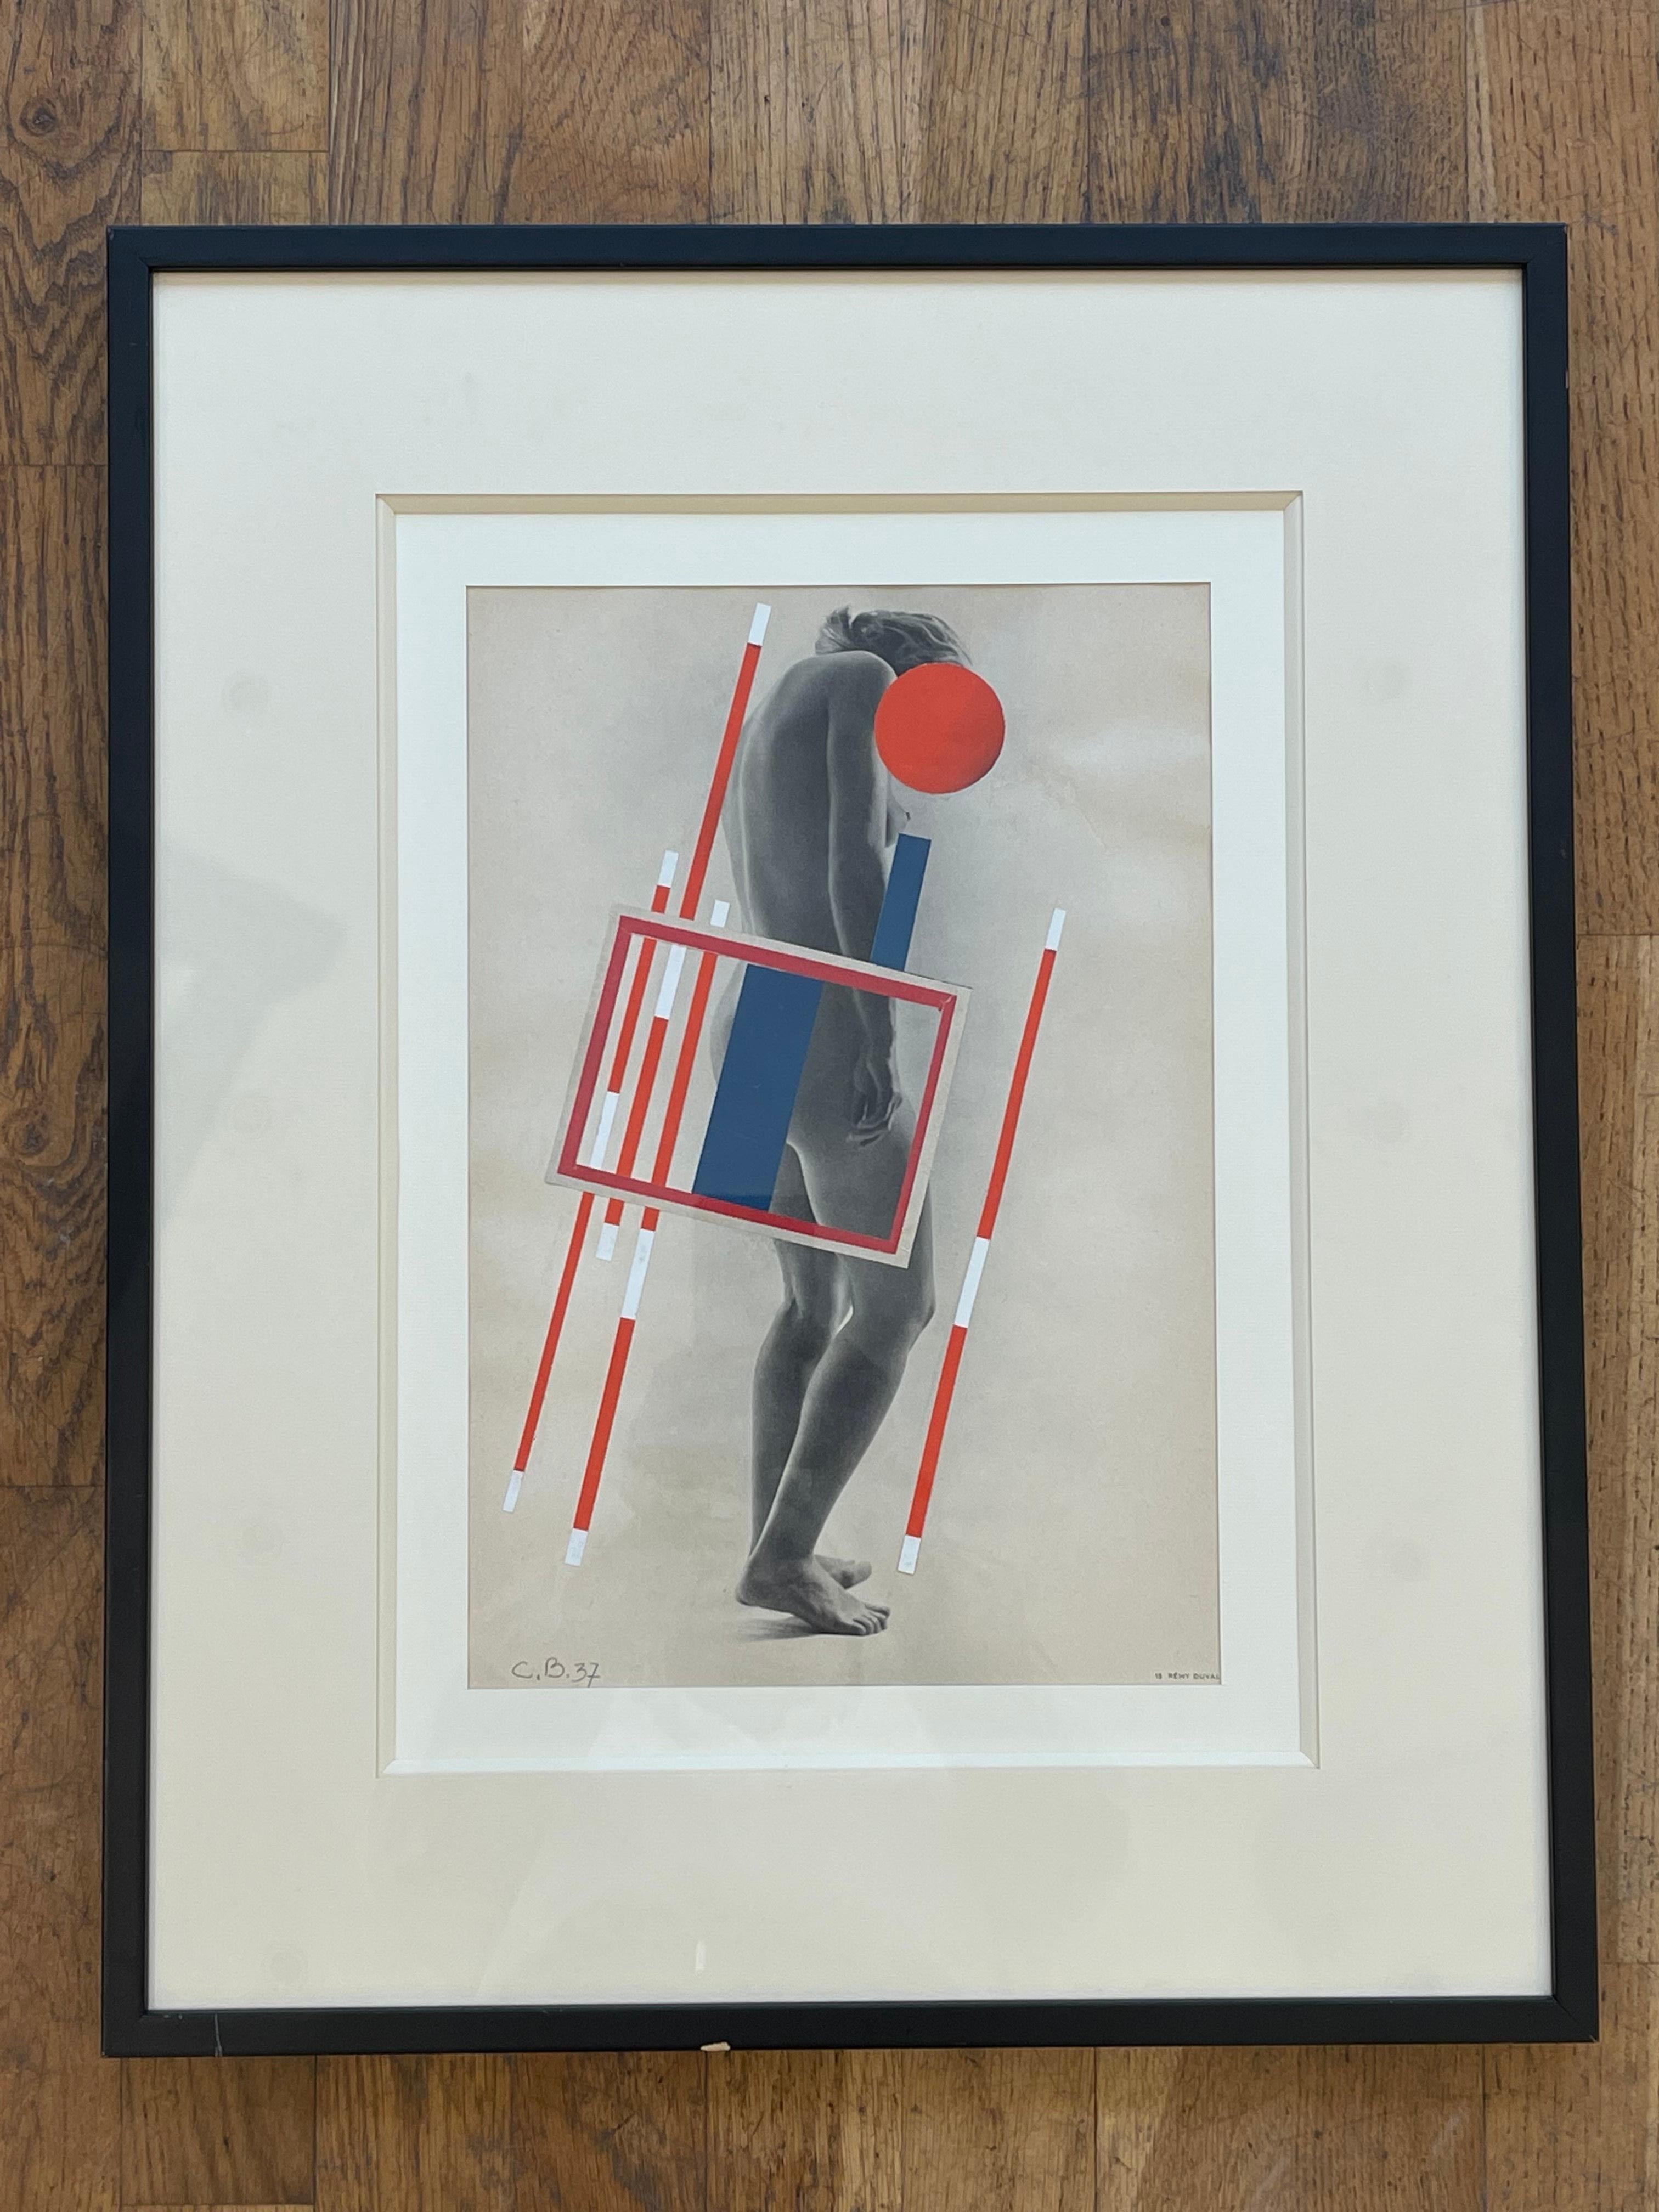 Superbe collage de motifs constructivistes de Camille Bryen (1907-1977) sur un tirage de photographies de nus en noir et blanc de Rémy Duval. 
Daté de 1937, monogrammé CB en bas à gauche. 
Cette œuvre est une œuvre de jeunesse de la célèbre artiste